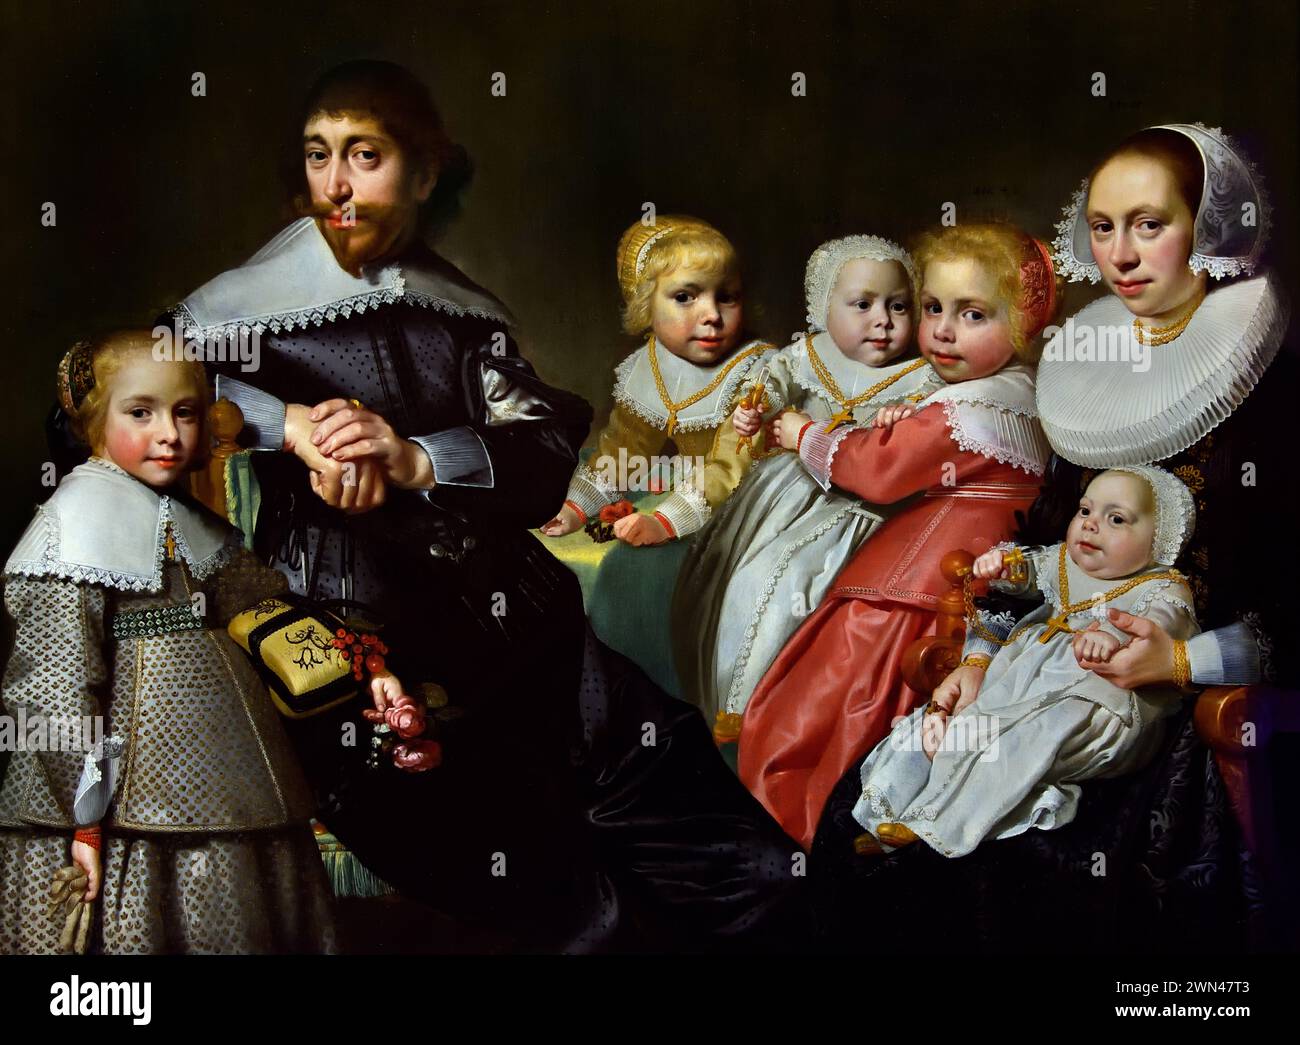 Doktor Cornelis van der Heijde und Ariaentgen Ariens de Buijser mit ihren Kindern von Jan Daemen cool 1589-1660 Niederlande, Niederlande, Königliches Museum der Schönen Künste, Antwerpen, Belgien, Belgien. Stockfoto